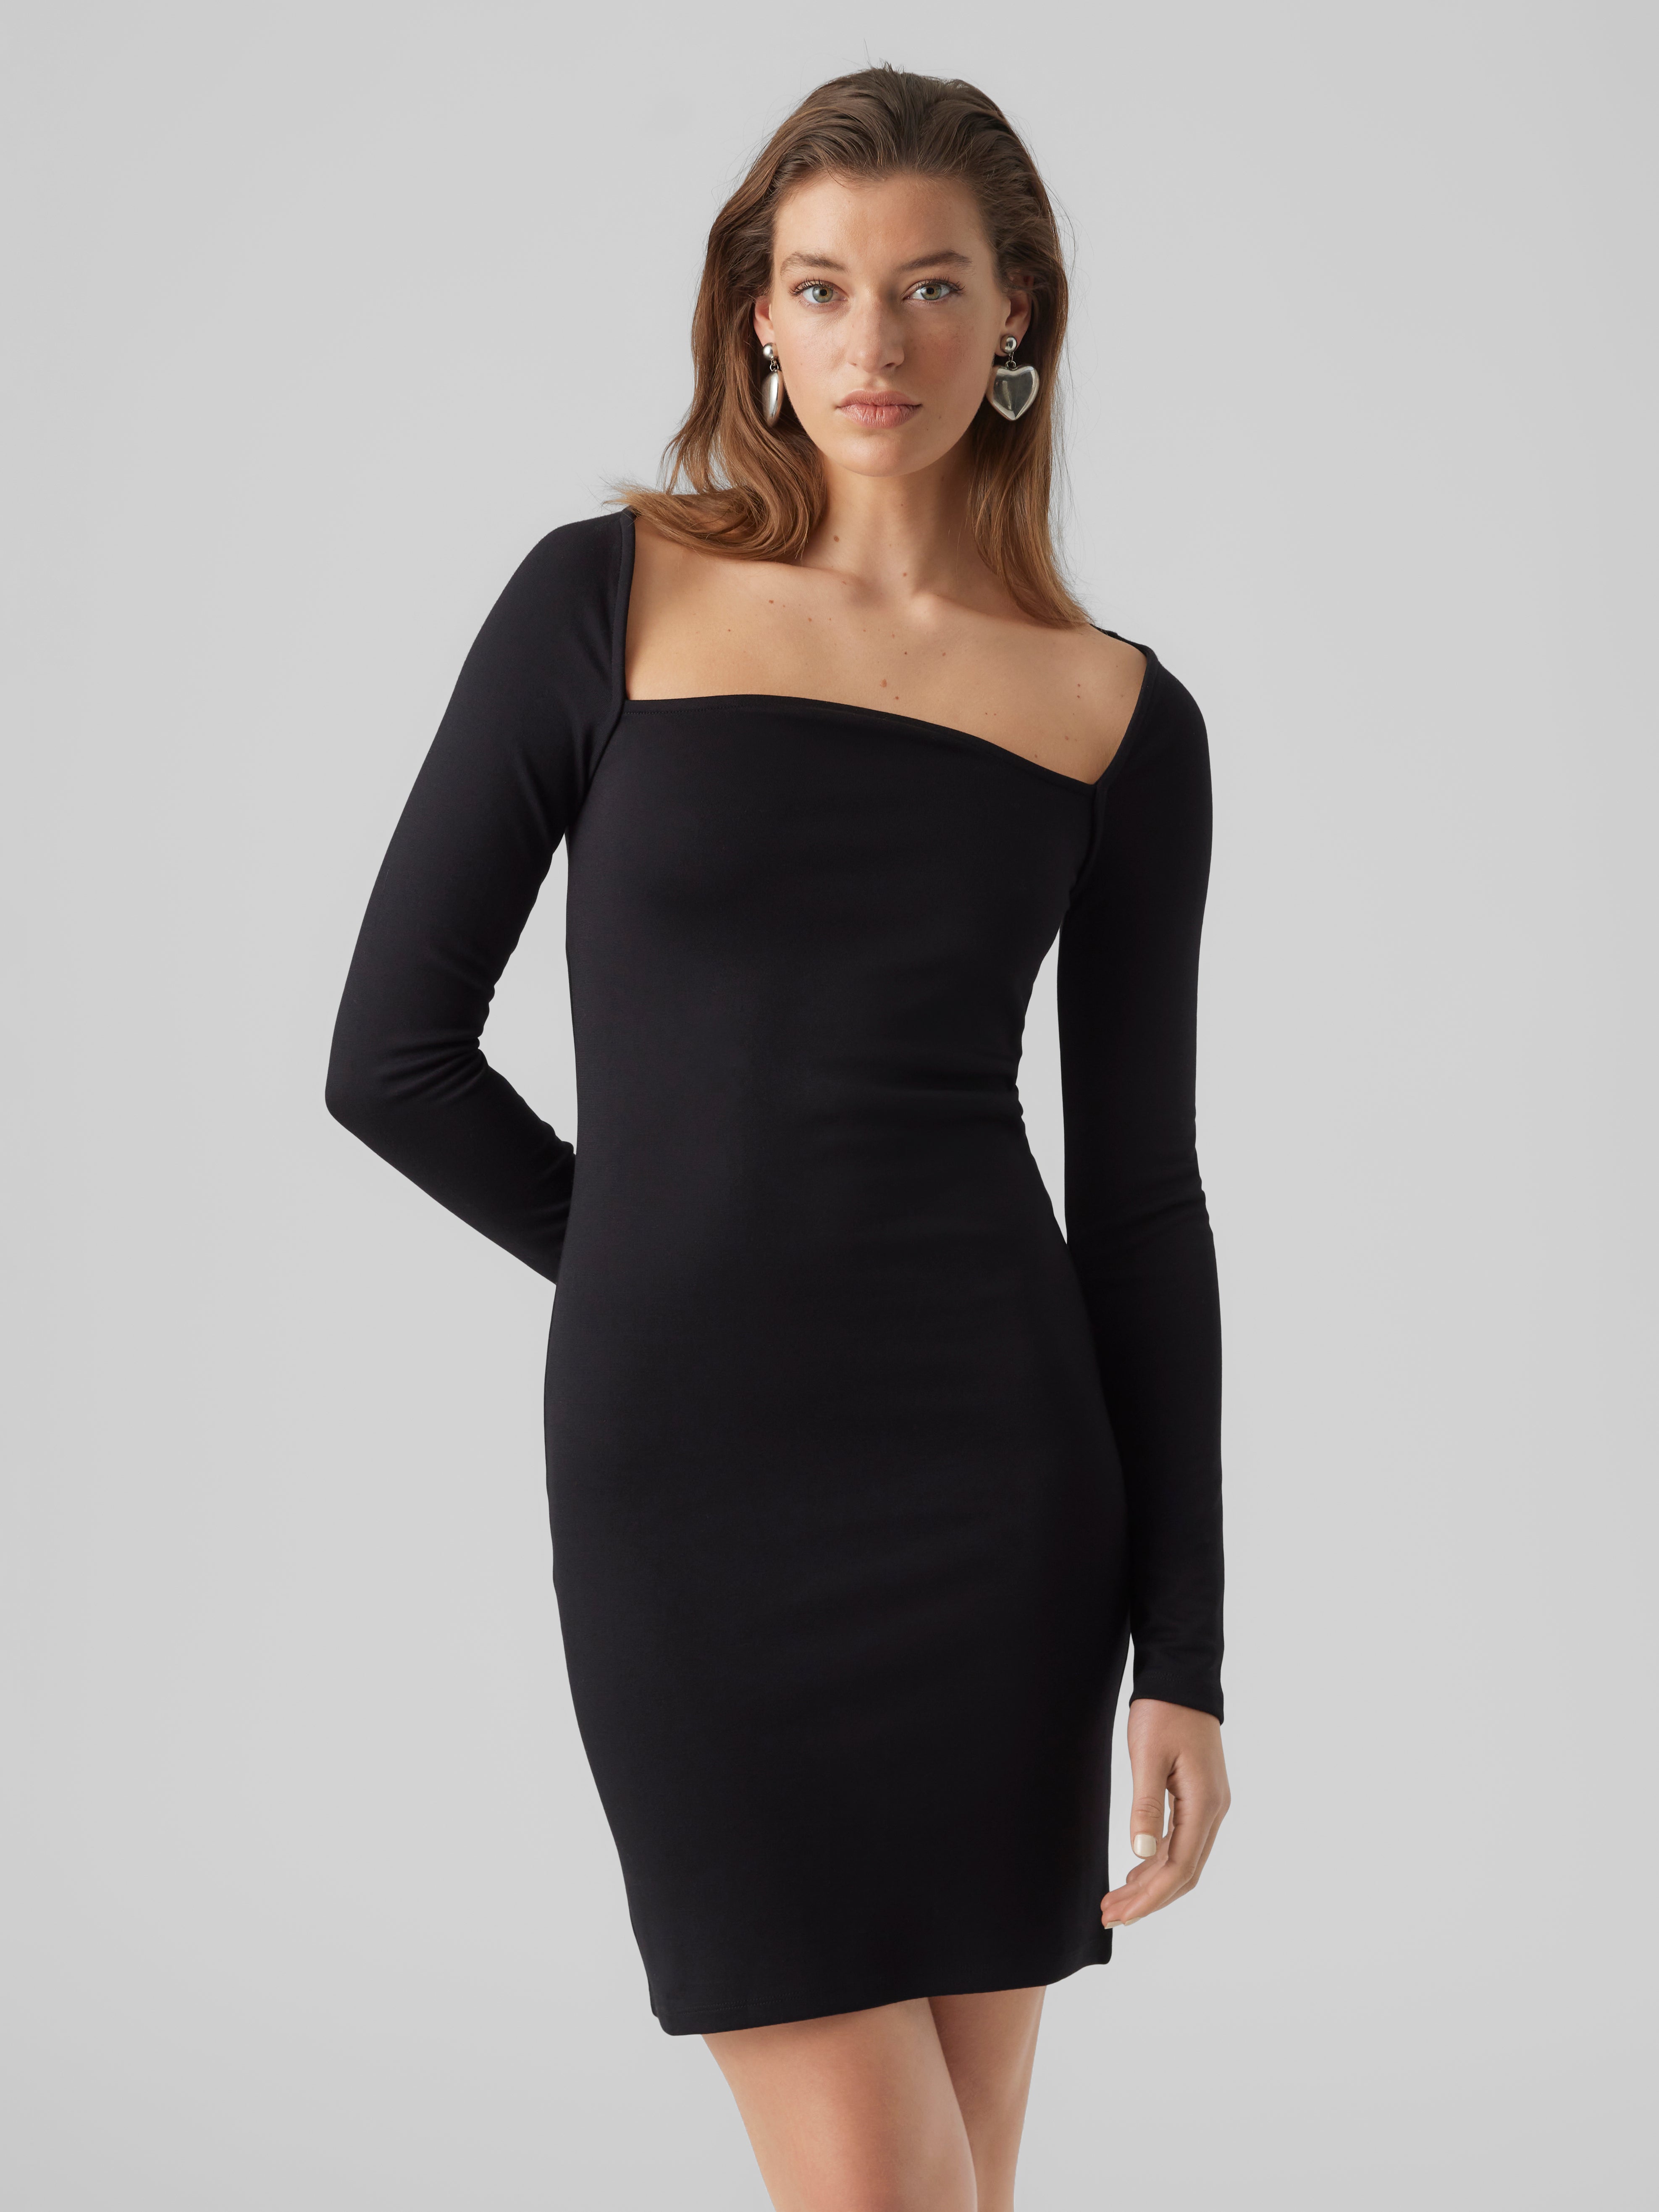 Vero Moda Black maxi dress. | Black maxi dress, Maxi dress, Clothes design